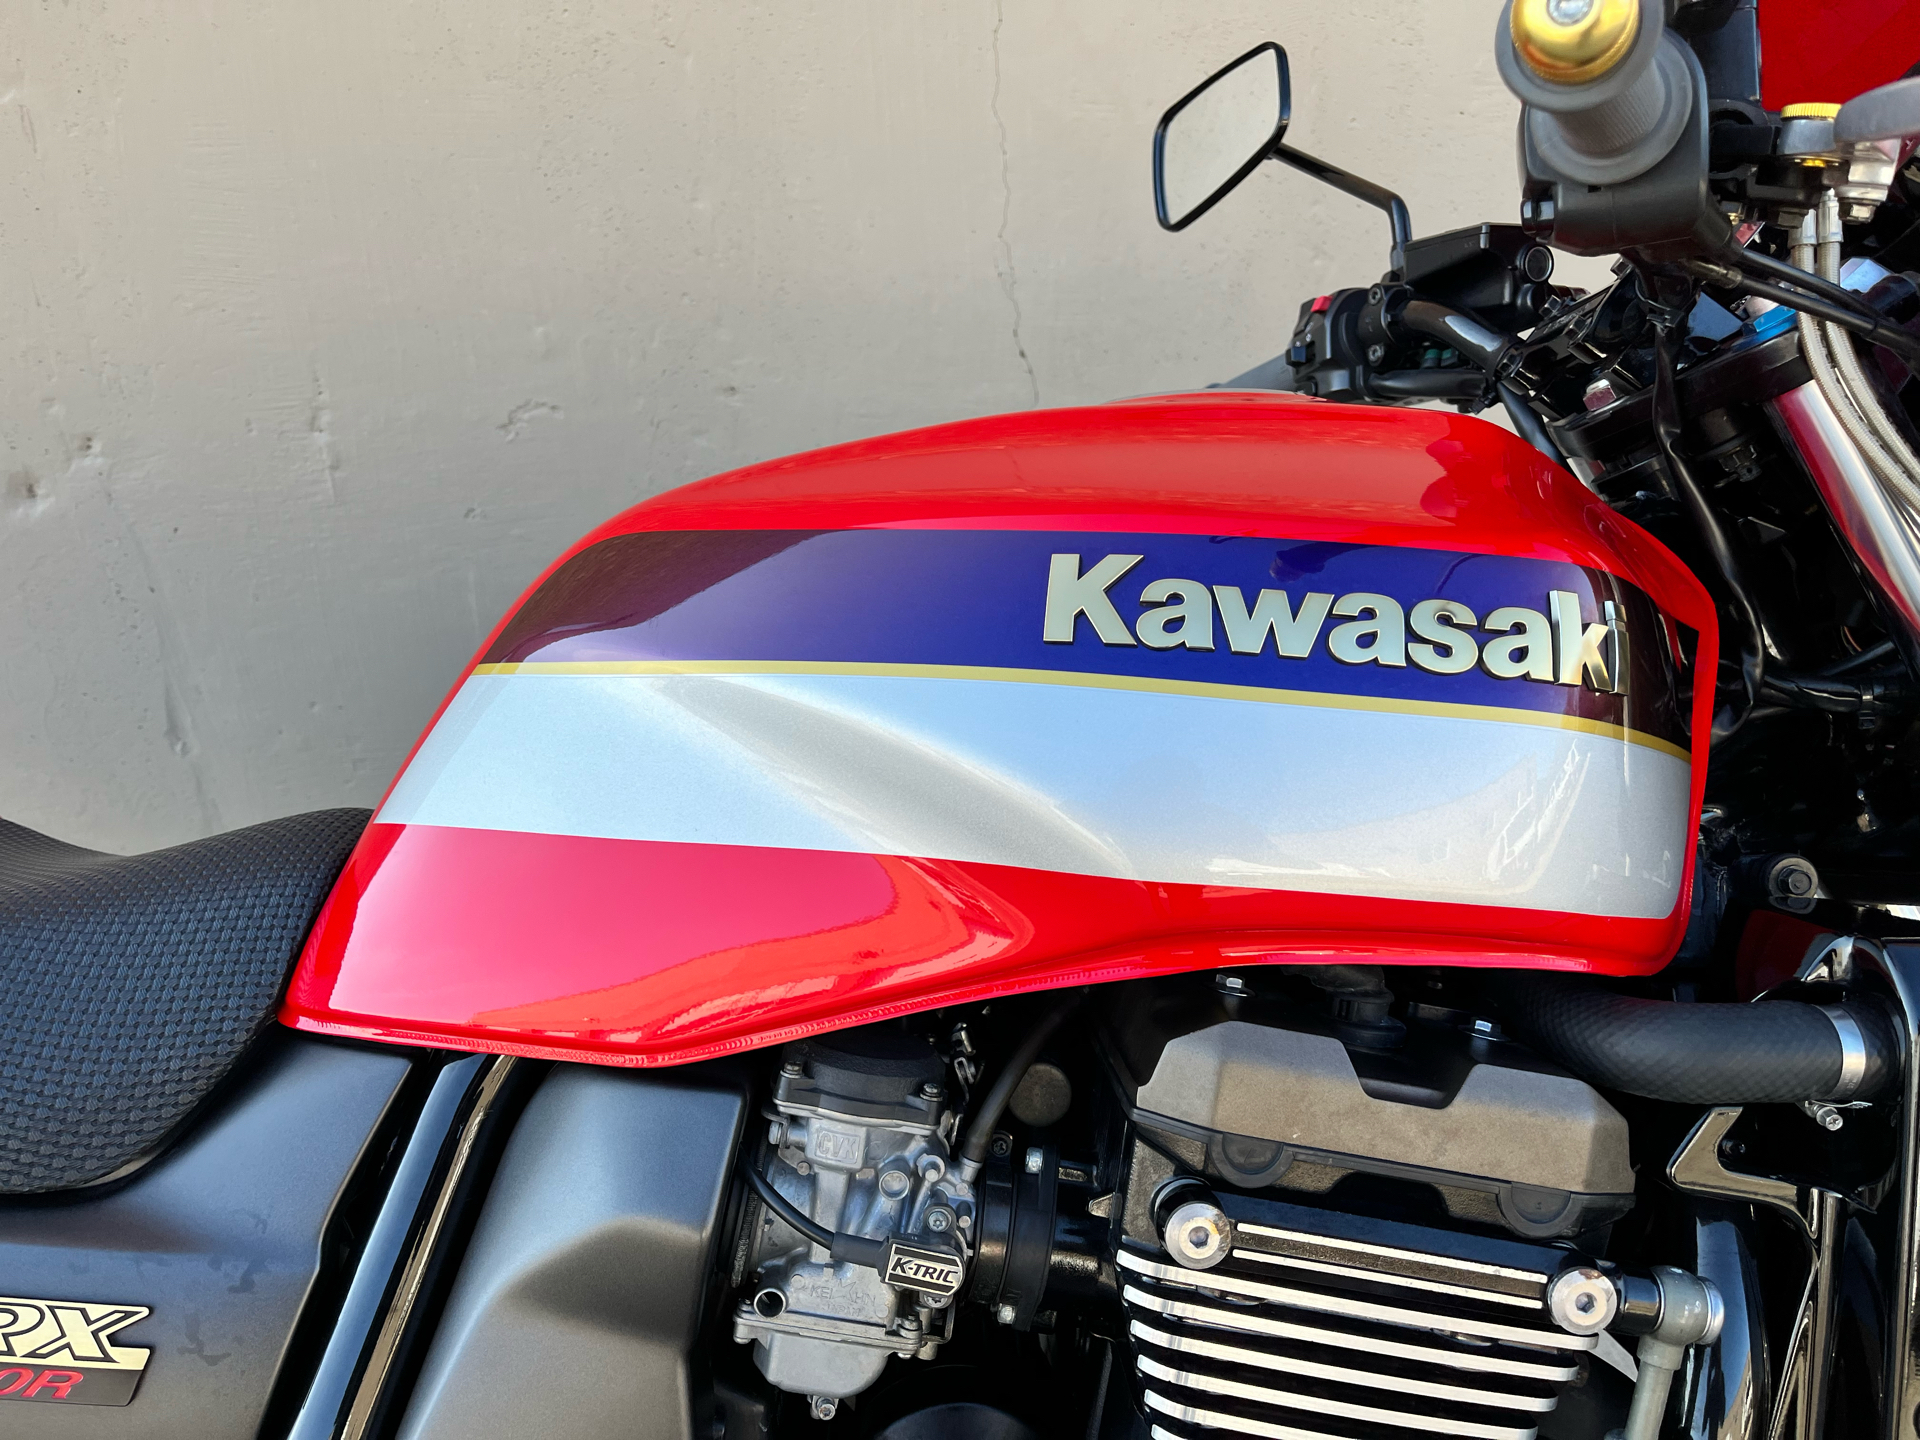 2002 Kawasaki ZRX1200R in Roselle, Illinois - Photo 8